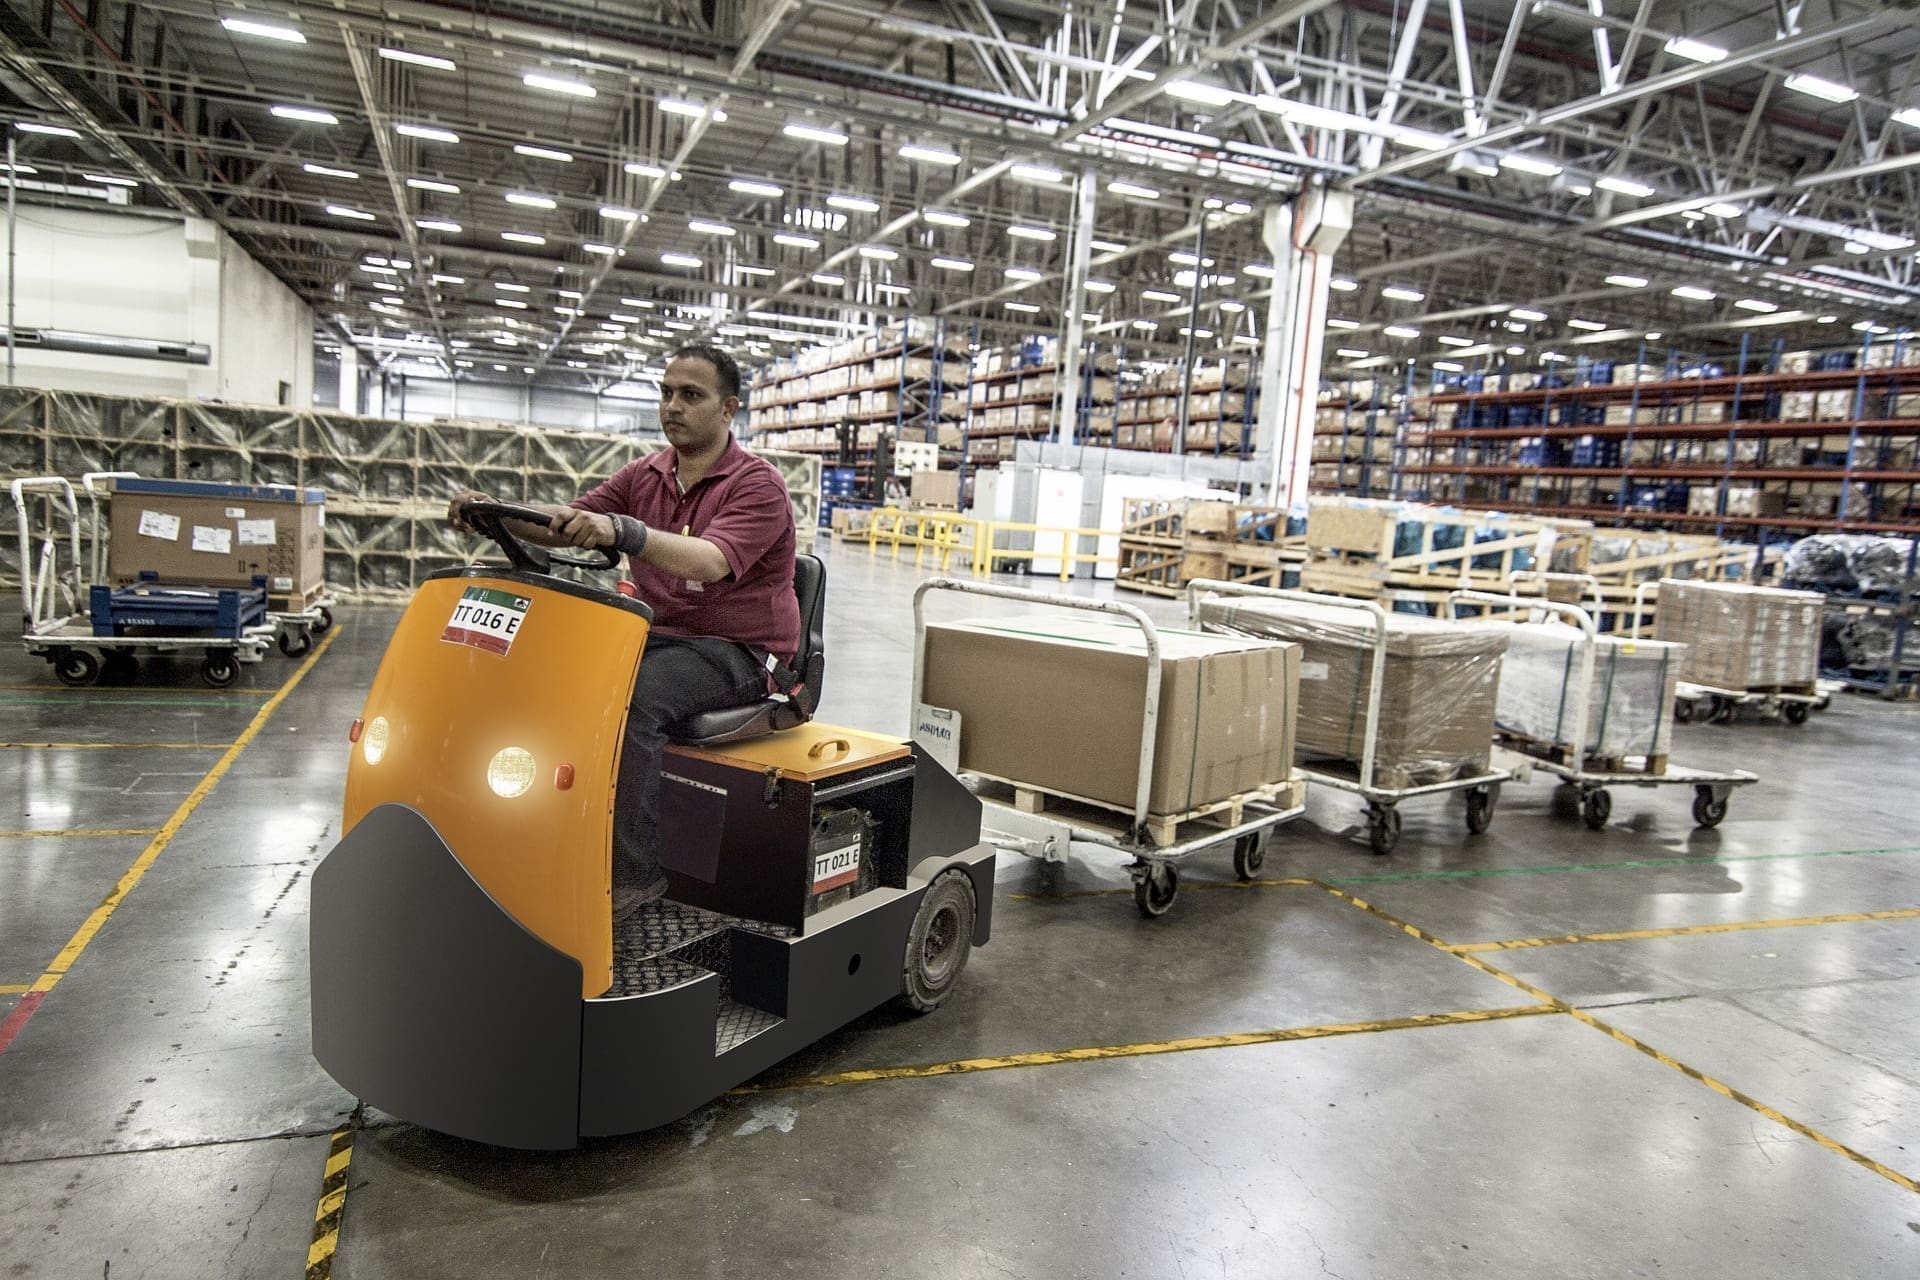 roTeg liefert weiterhin die bestellten Roboterteile an Firmen in In- und Ausland